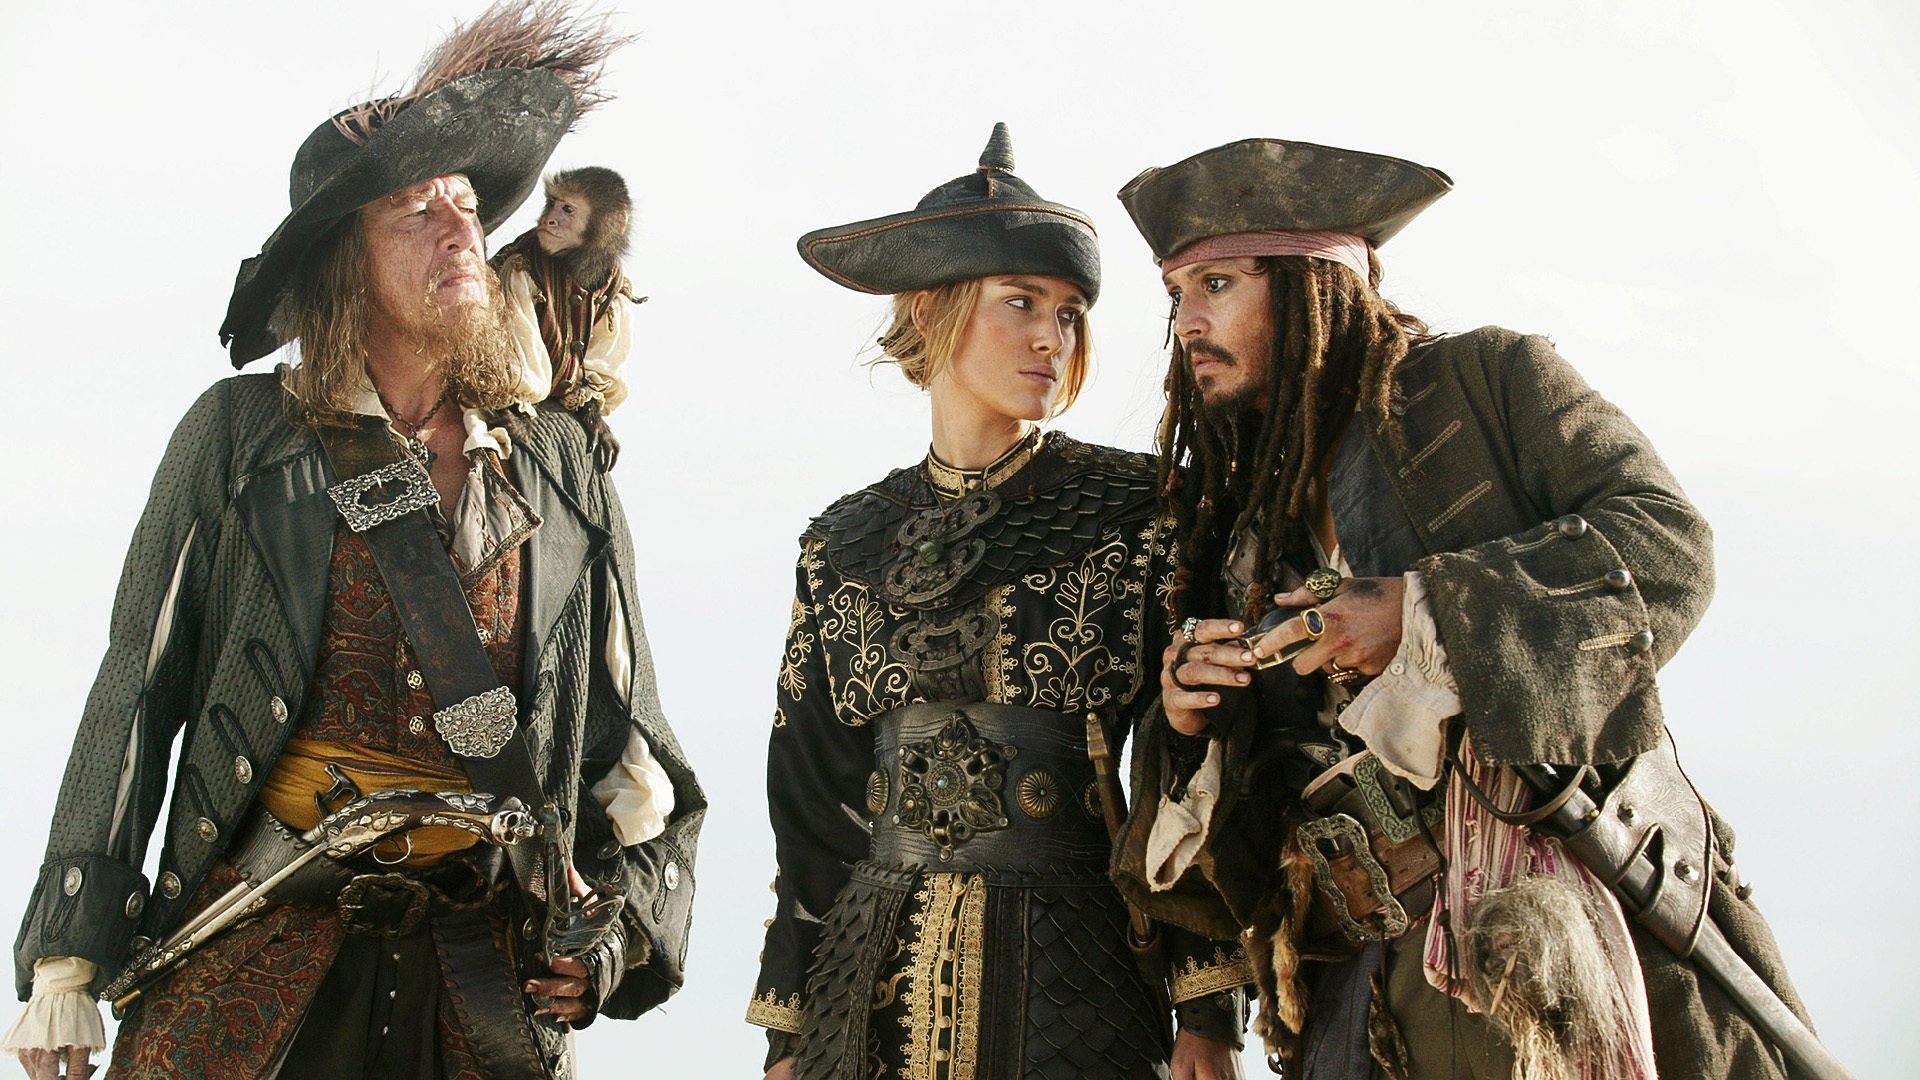 Pirates of the Caribbean: Vid världens ände